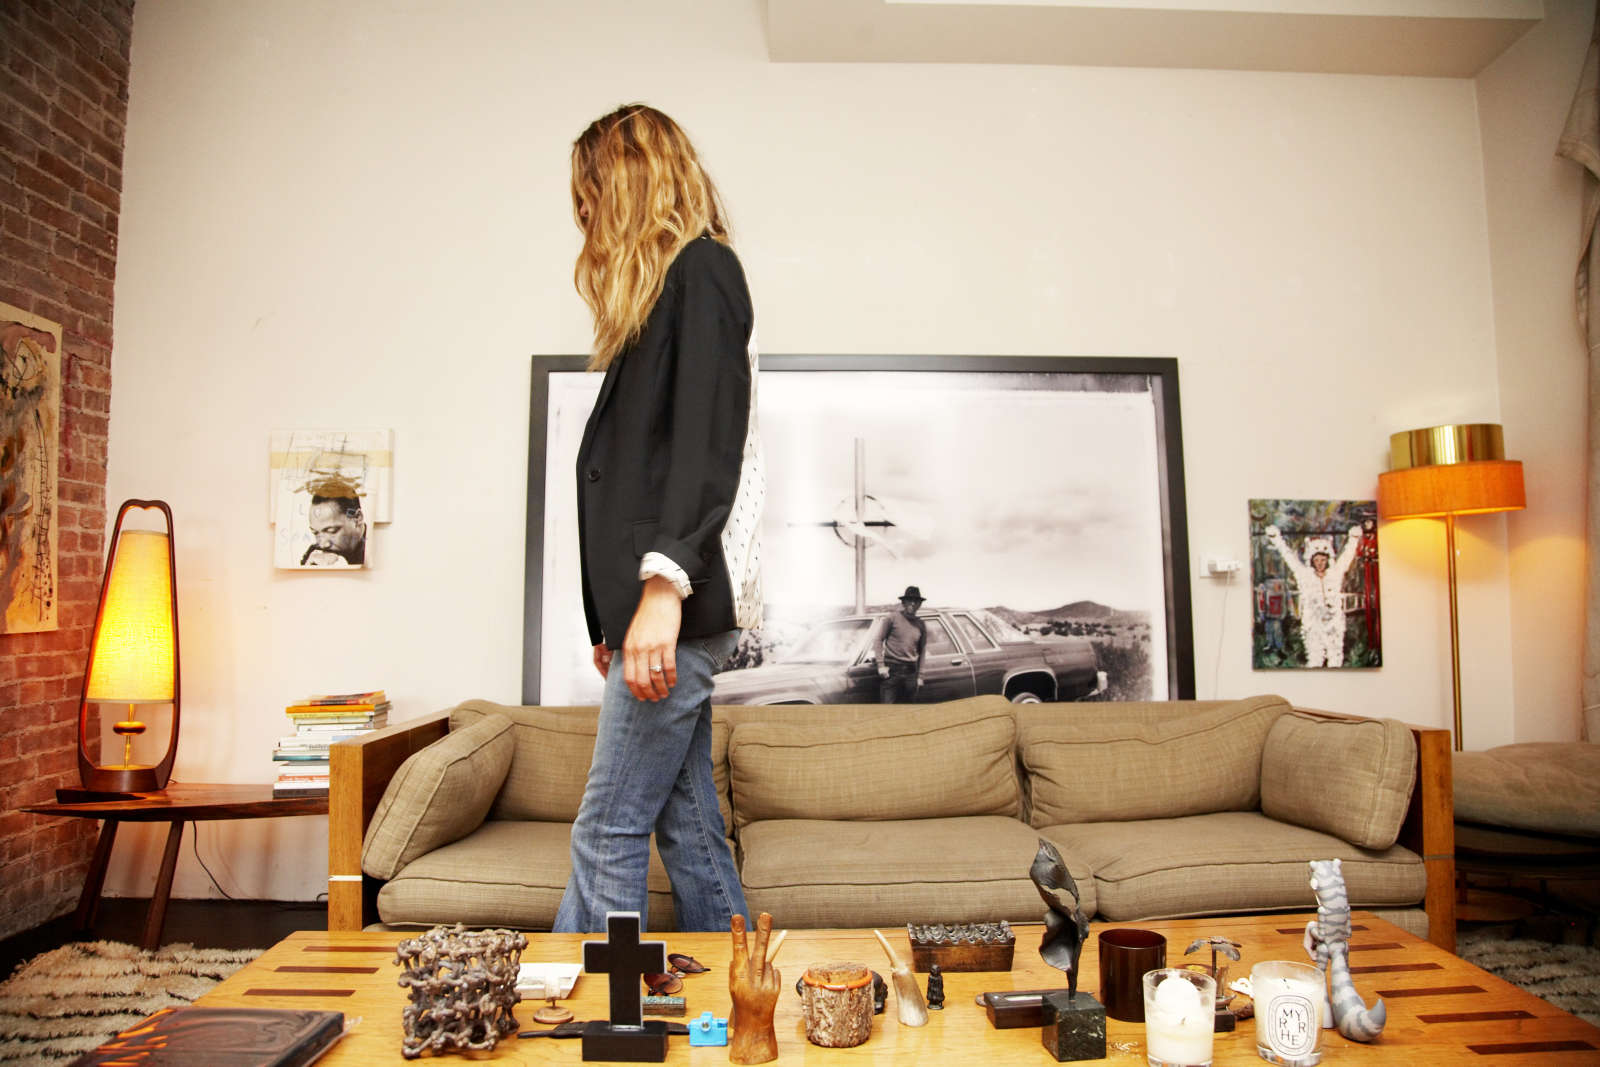 Erin in her Living Room, 2008